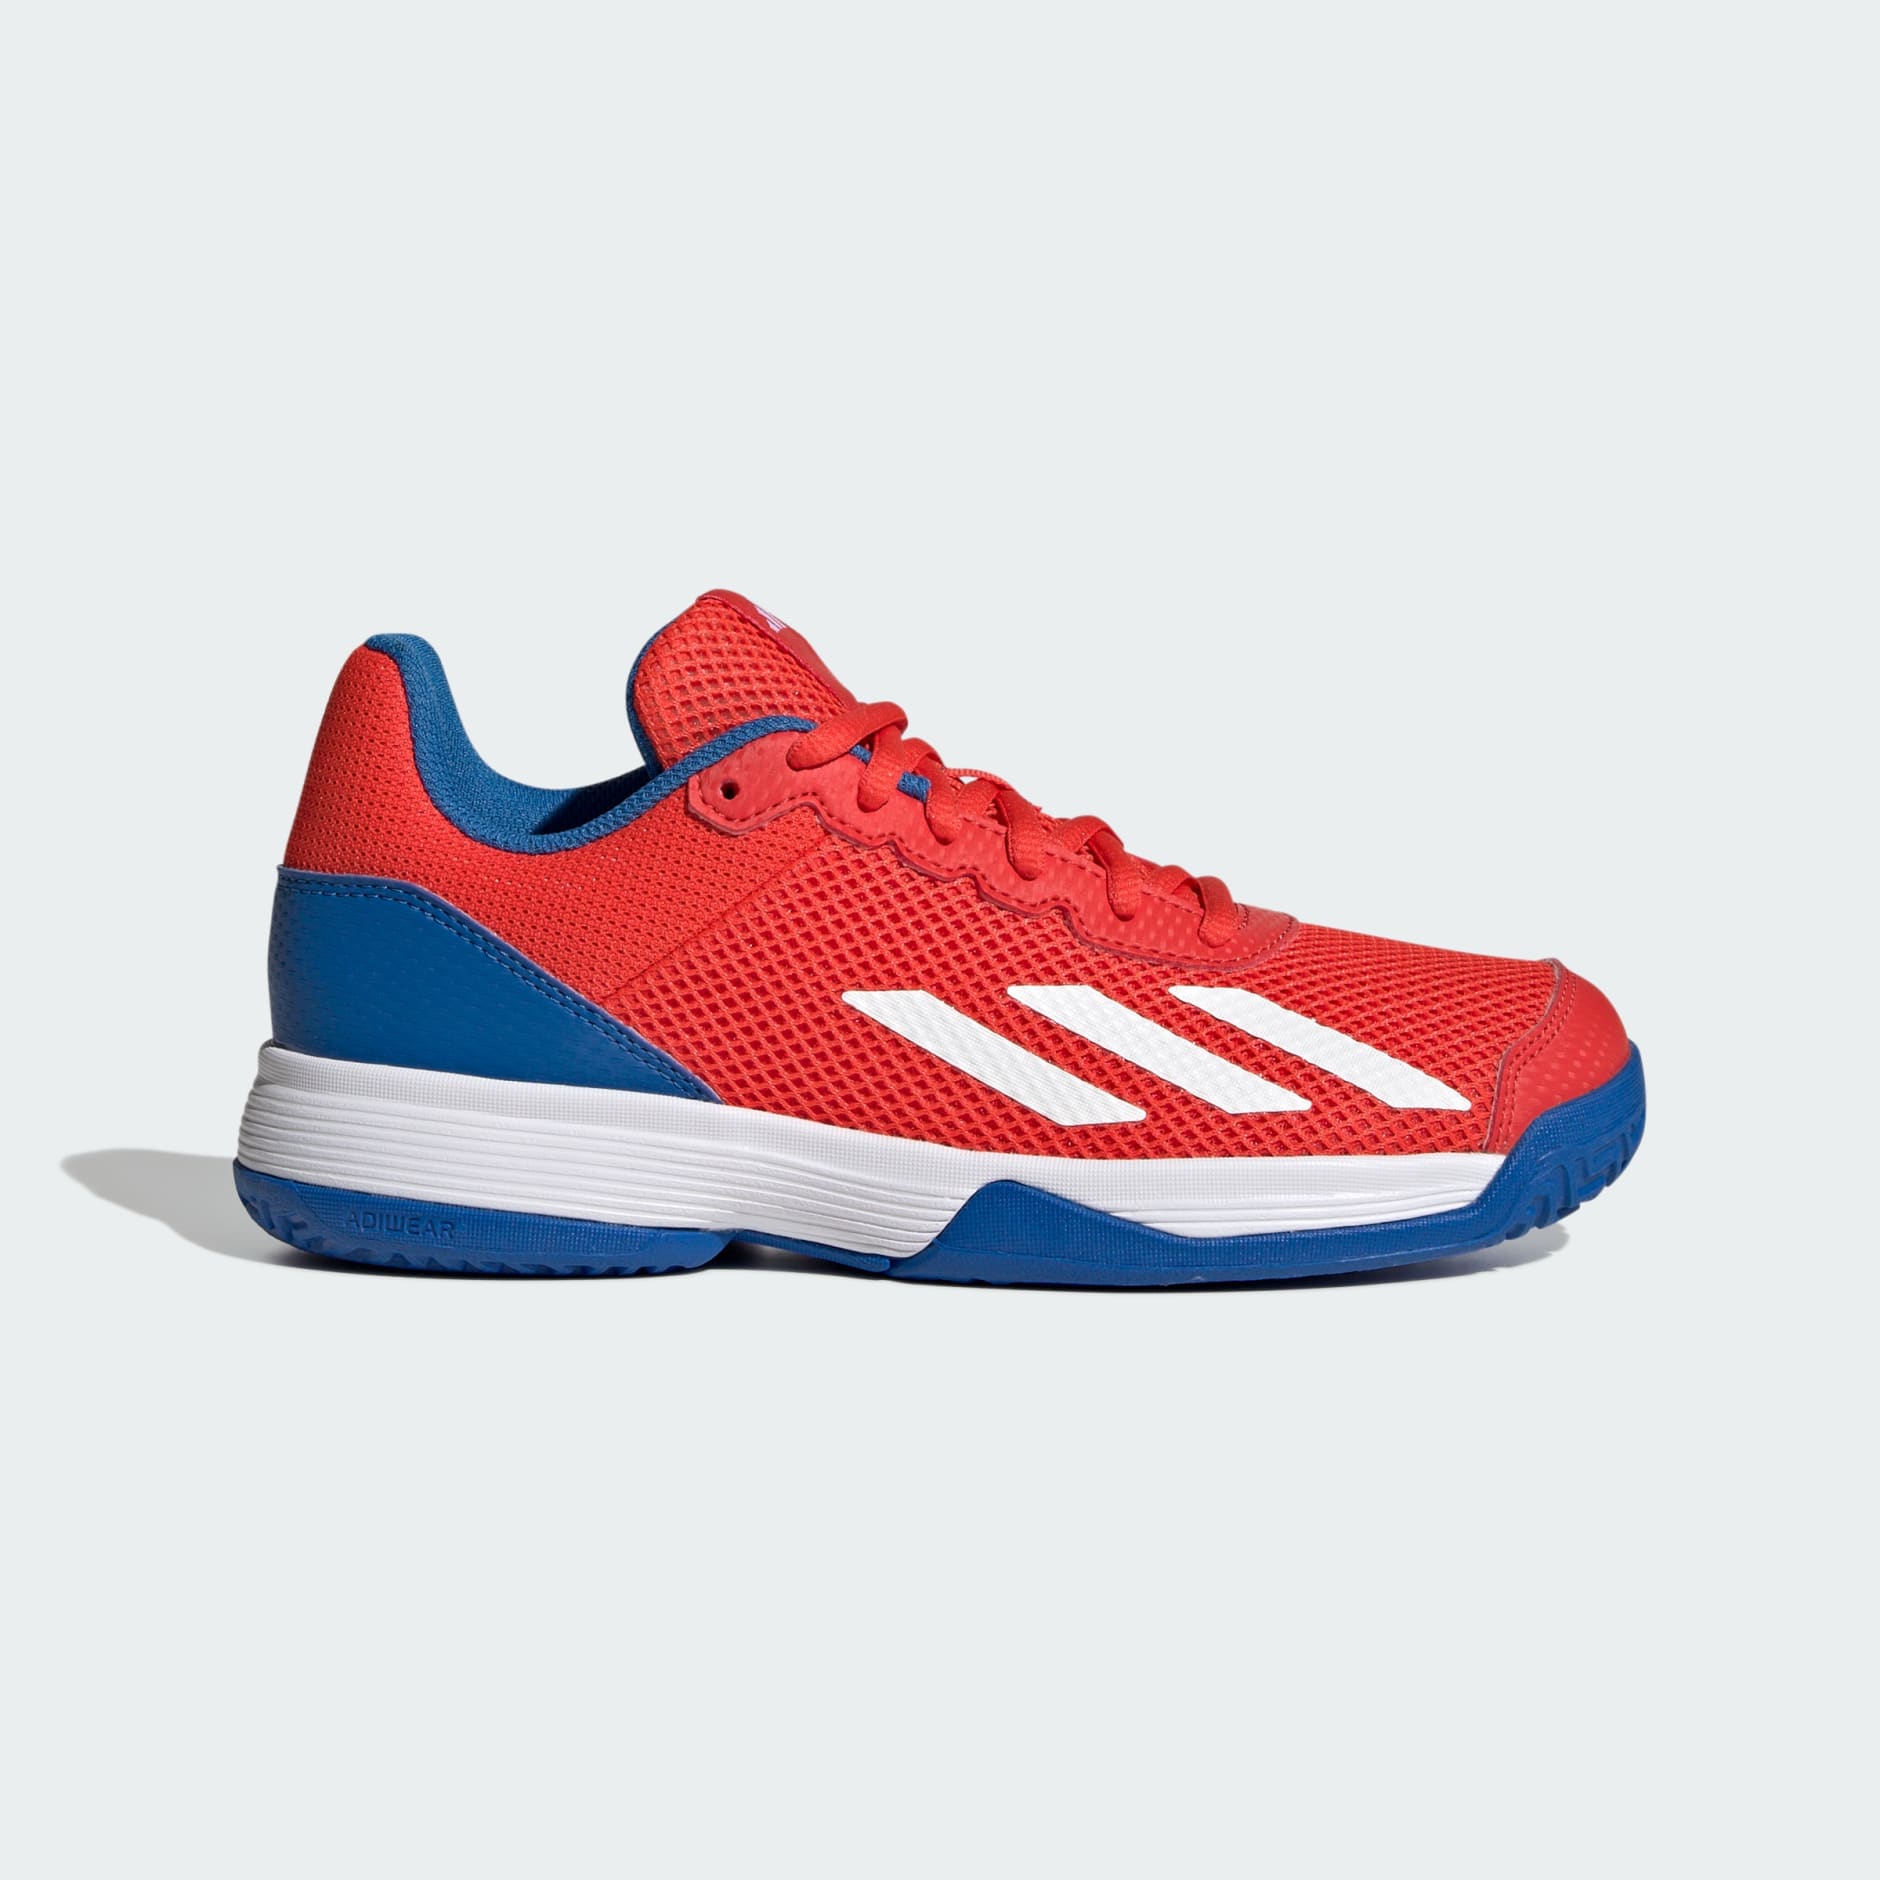 adidas Courtflash Tennis Shoes - Red | adidas UAE